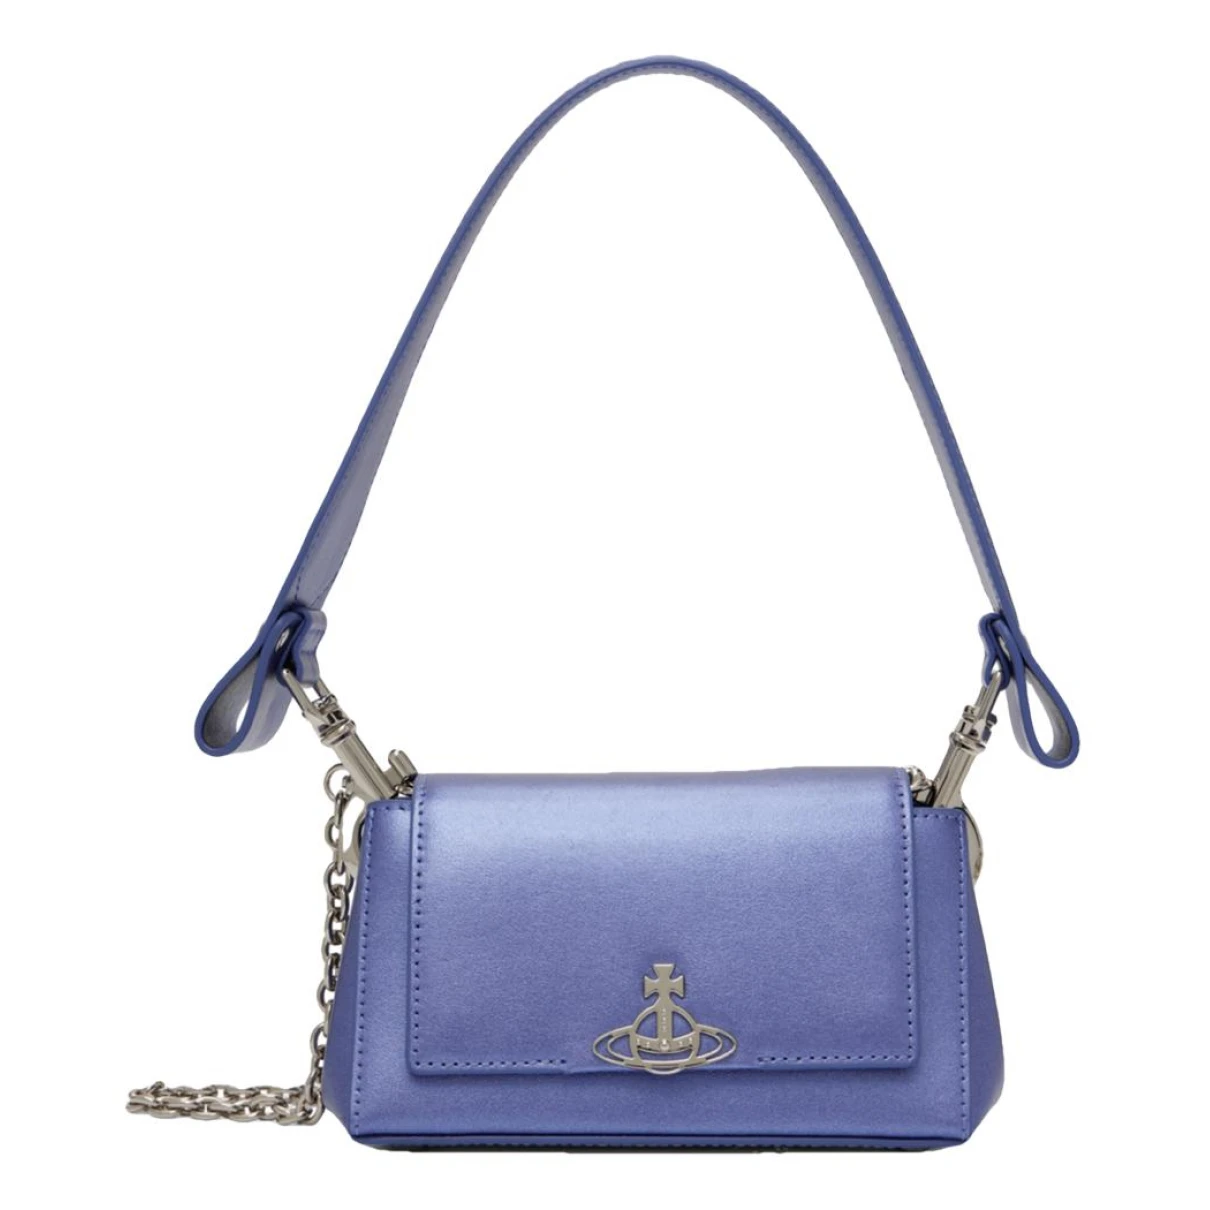 Pre-owned Vivienne Westwood Leather Handbag In Purple